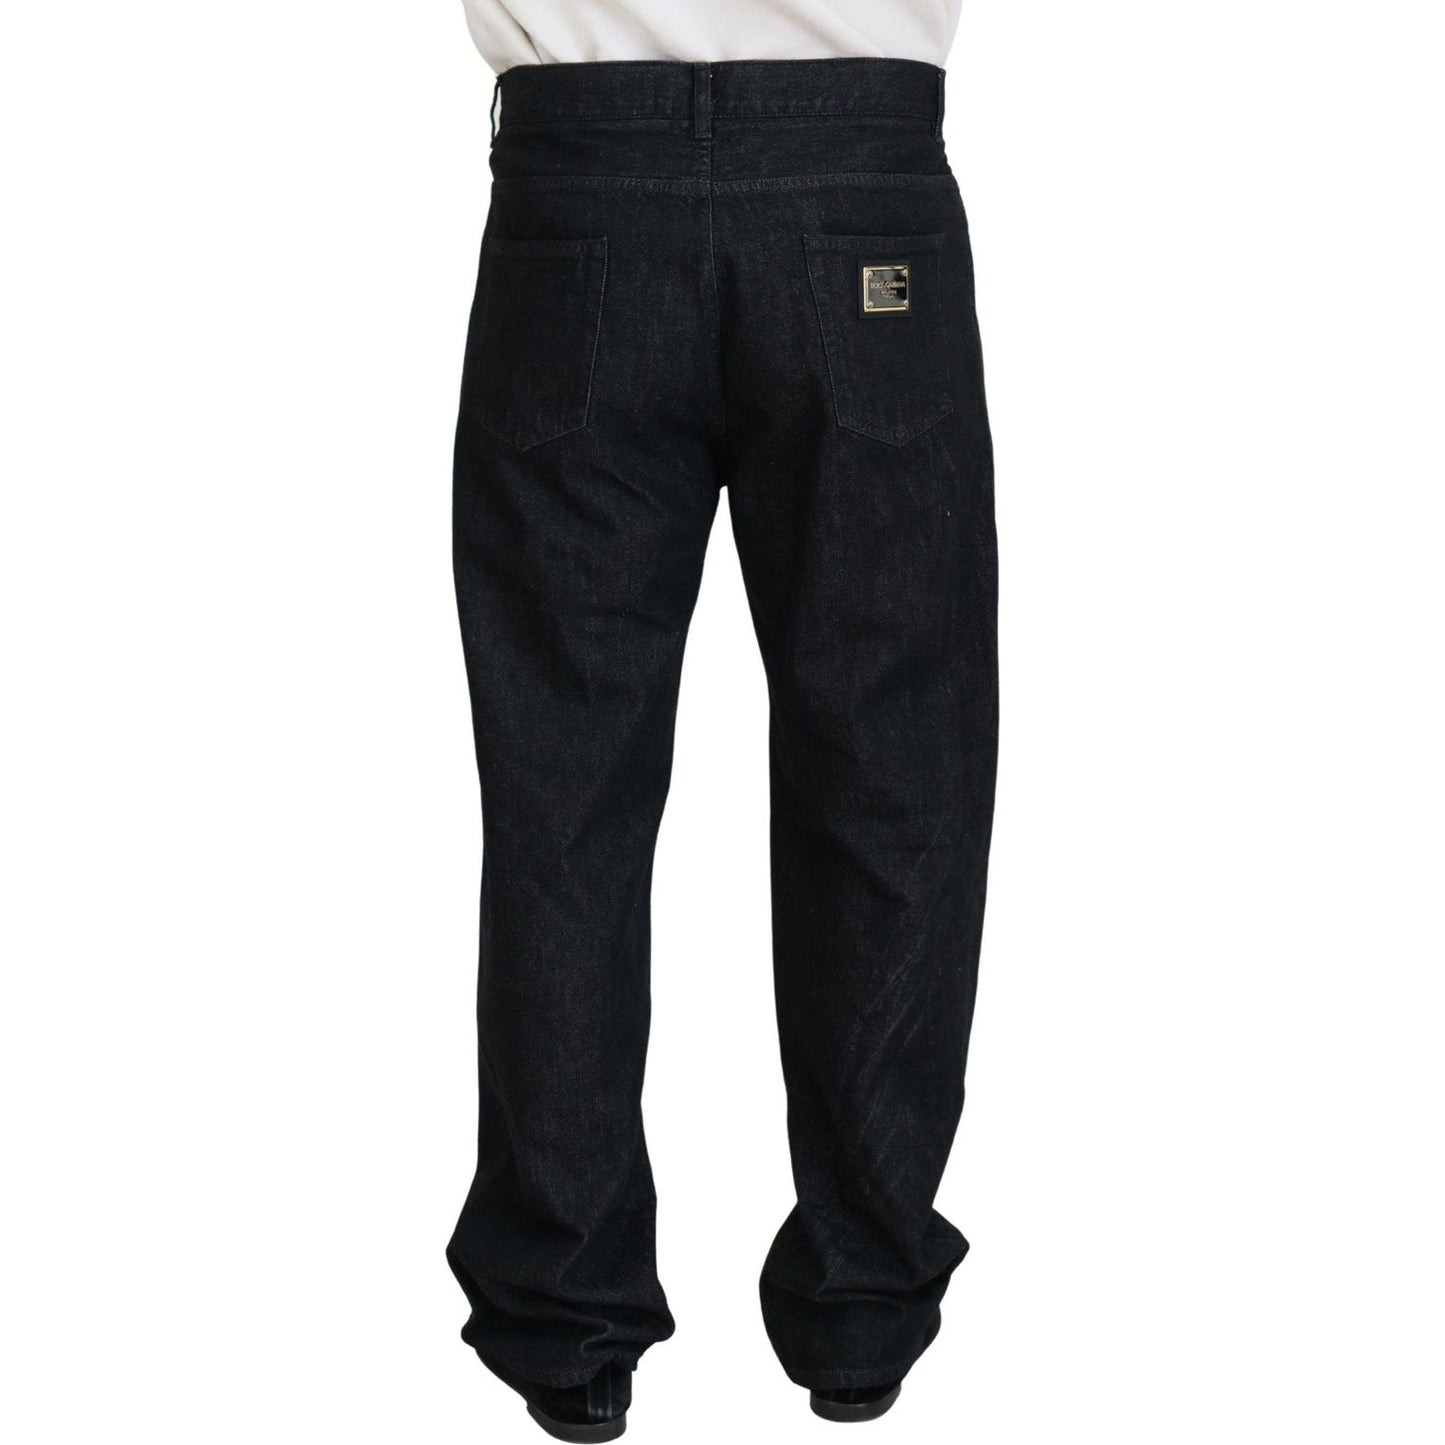 Dolce & Gabbana Elegant Black Washed Denim Pants Luxe Cotton black-washed-cotton-men-casual-denim-jeans